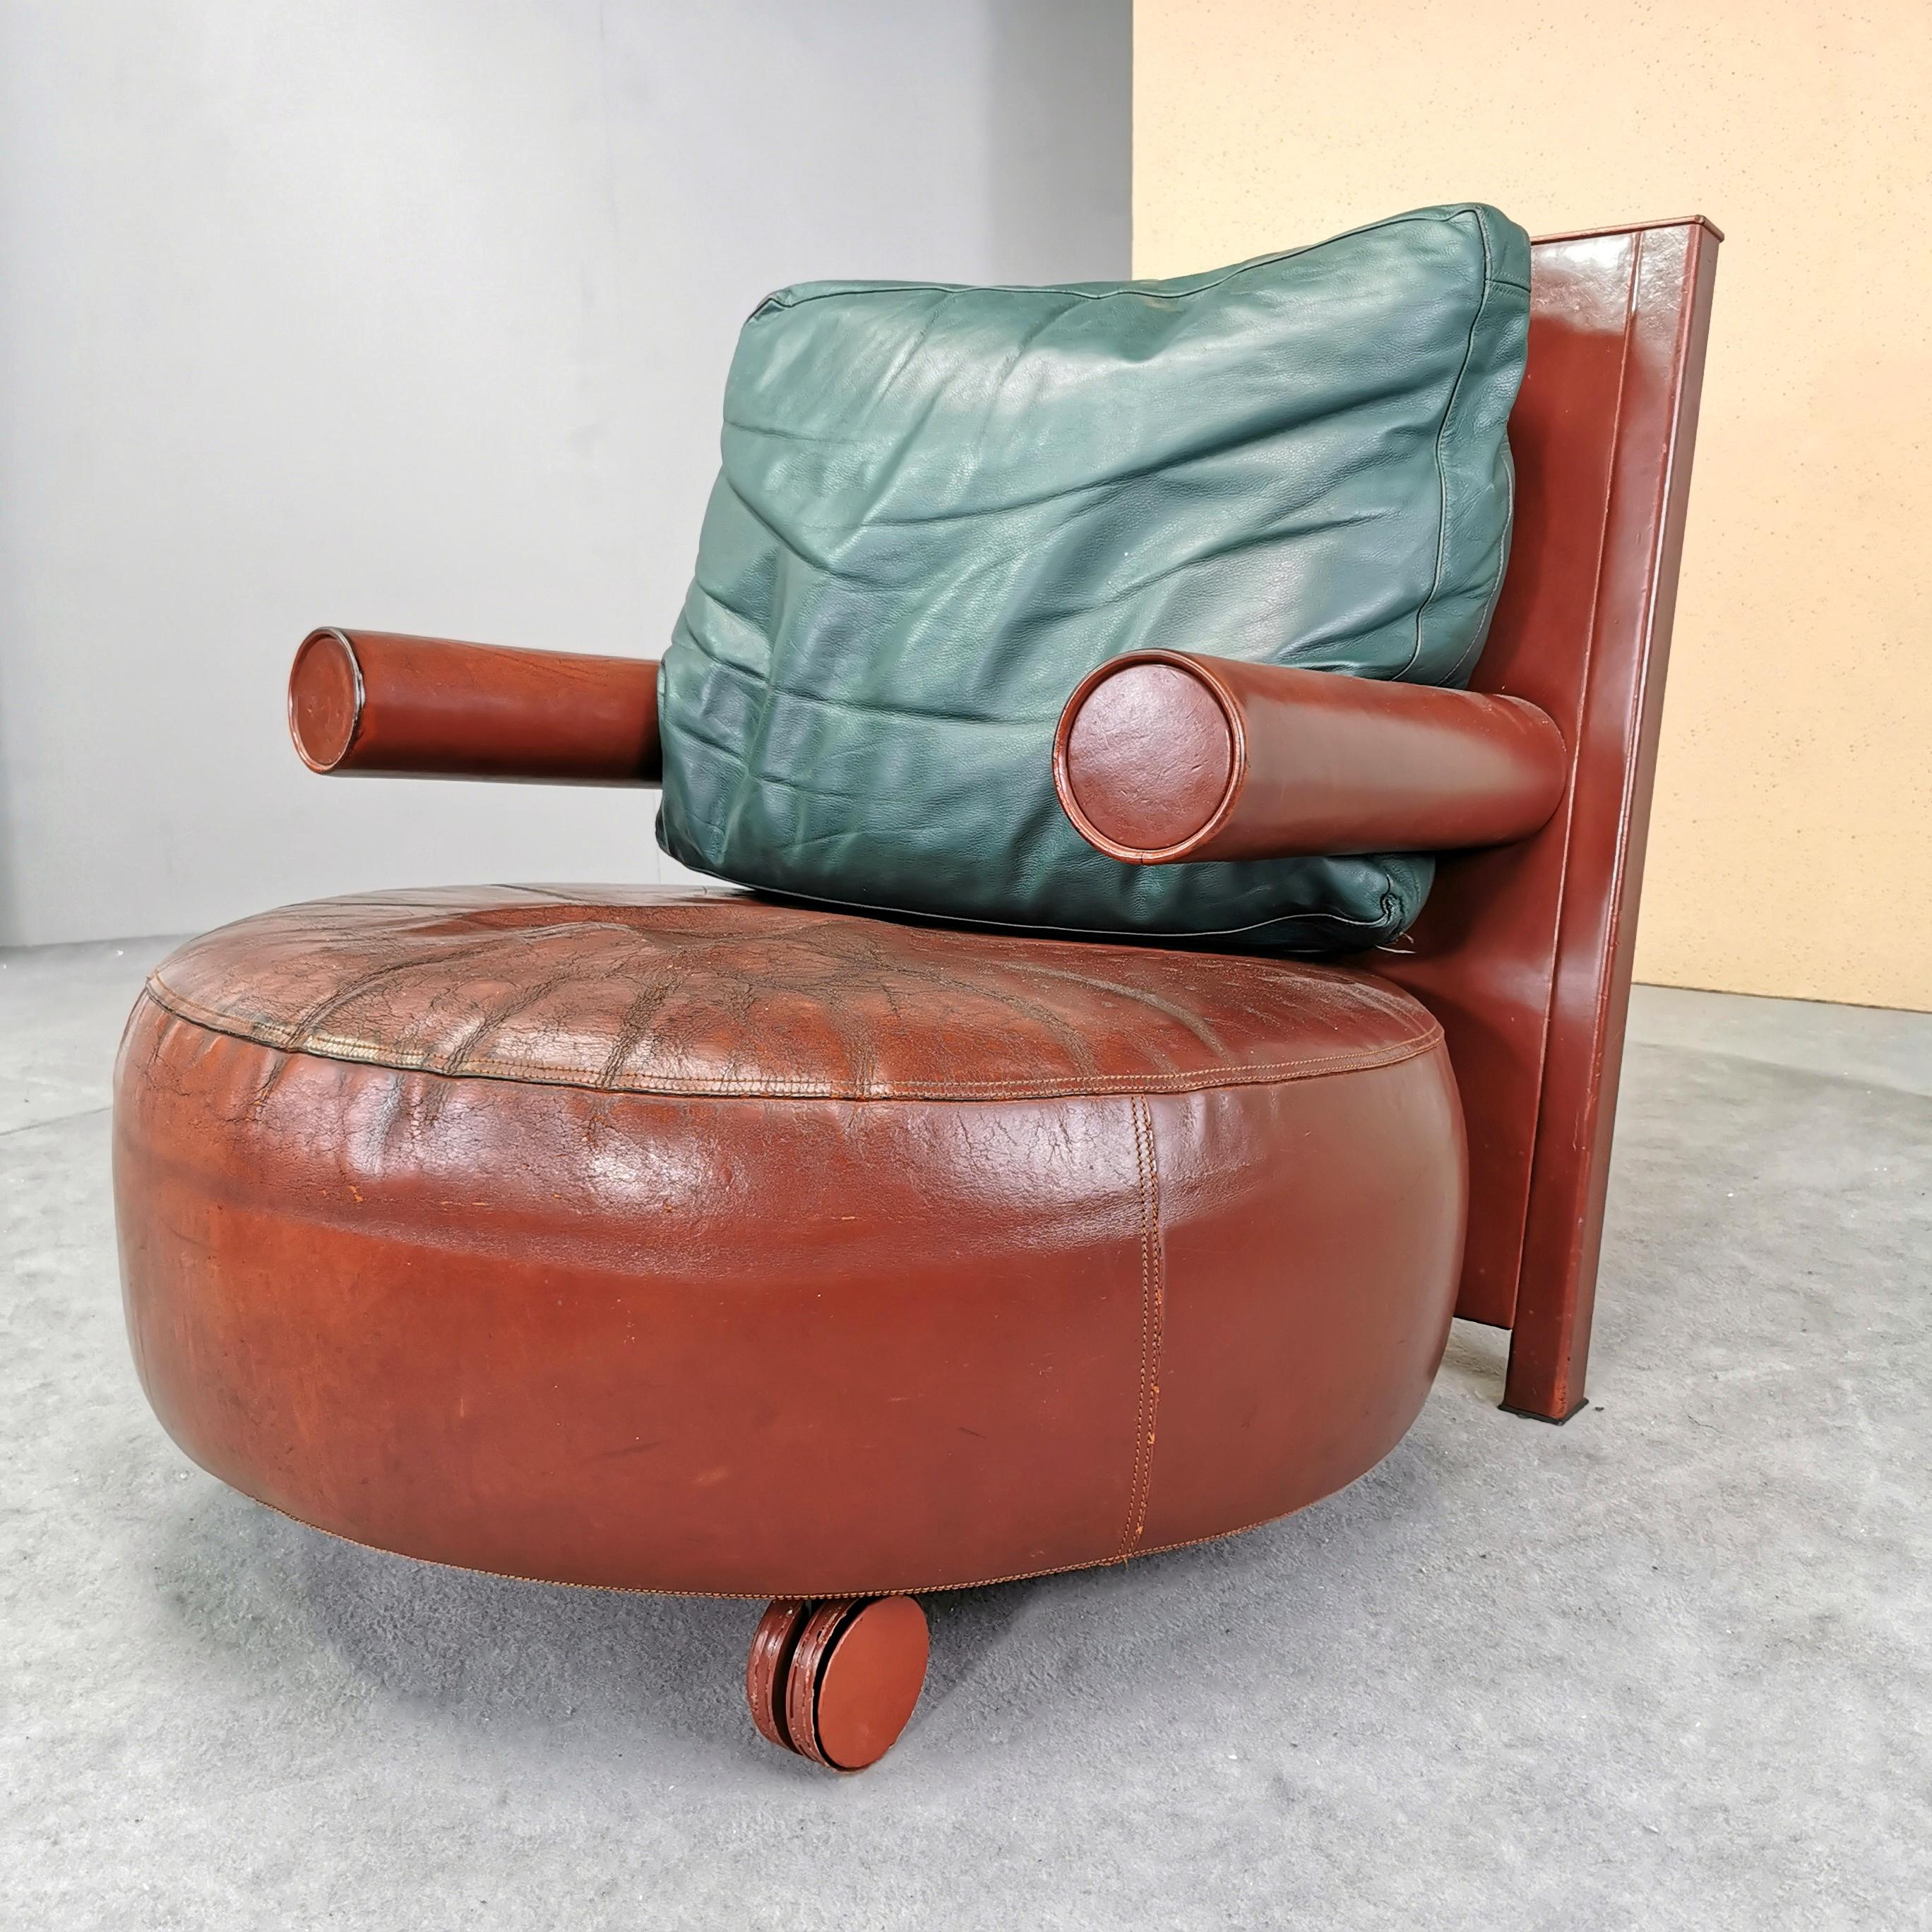 Baisity-Sessel aus den 1980er Jahren in zweifarbigem bordeauxrotem und englischem grünem Leder.
 Der Stuhl ist in gutem Gesamtzustand mit normalen Gebrauchsspuren im Laufe der Zeit. 